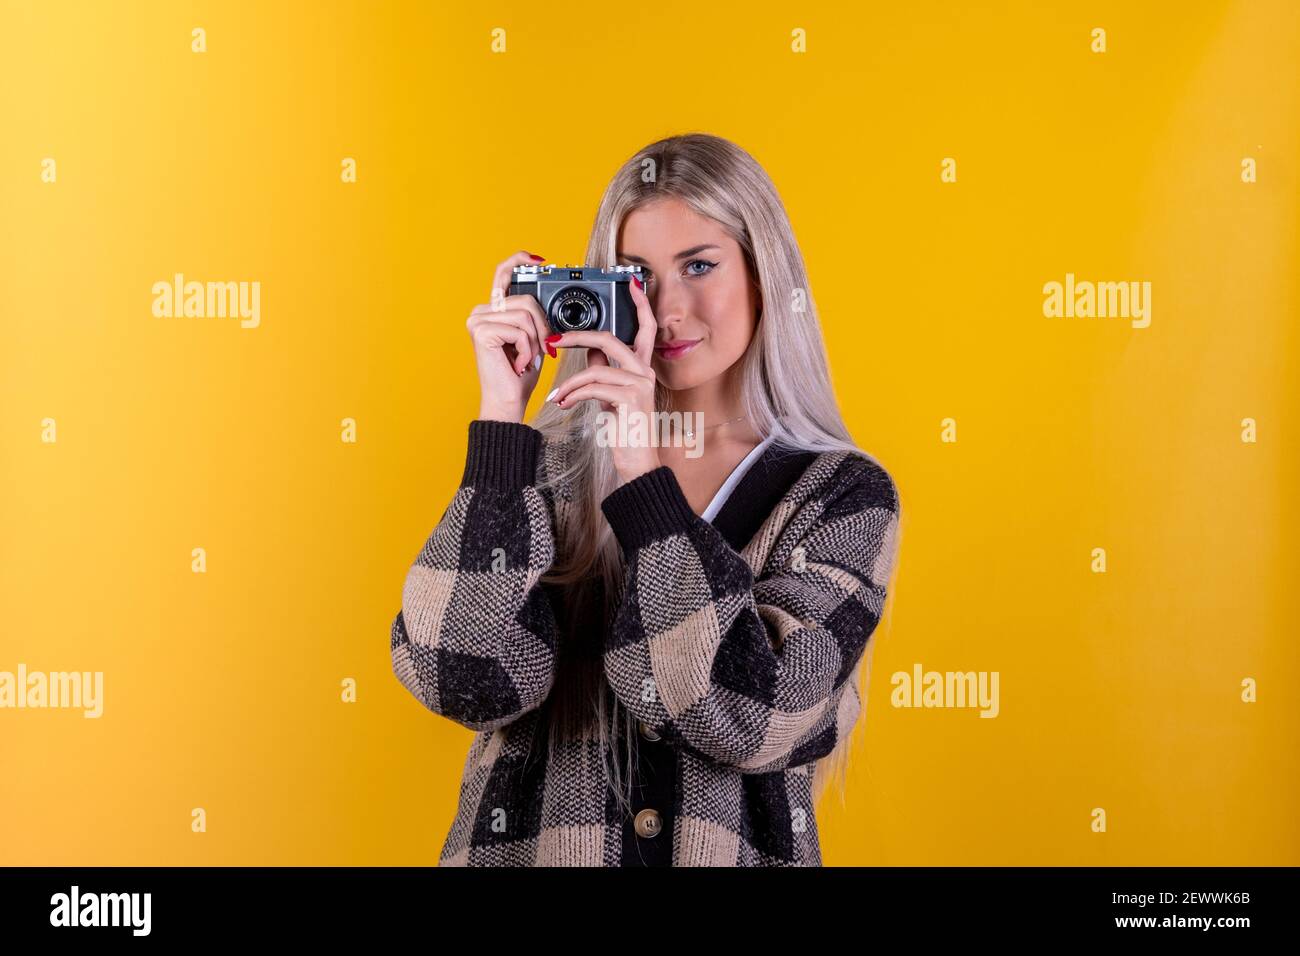 Modischer Look, schönes junges Frauenmodell mit Retro-Kamera, isoliert auf gelbem Hintergrund - Nahaufnahmporträt einer süßen Fotografin Stockfoto